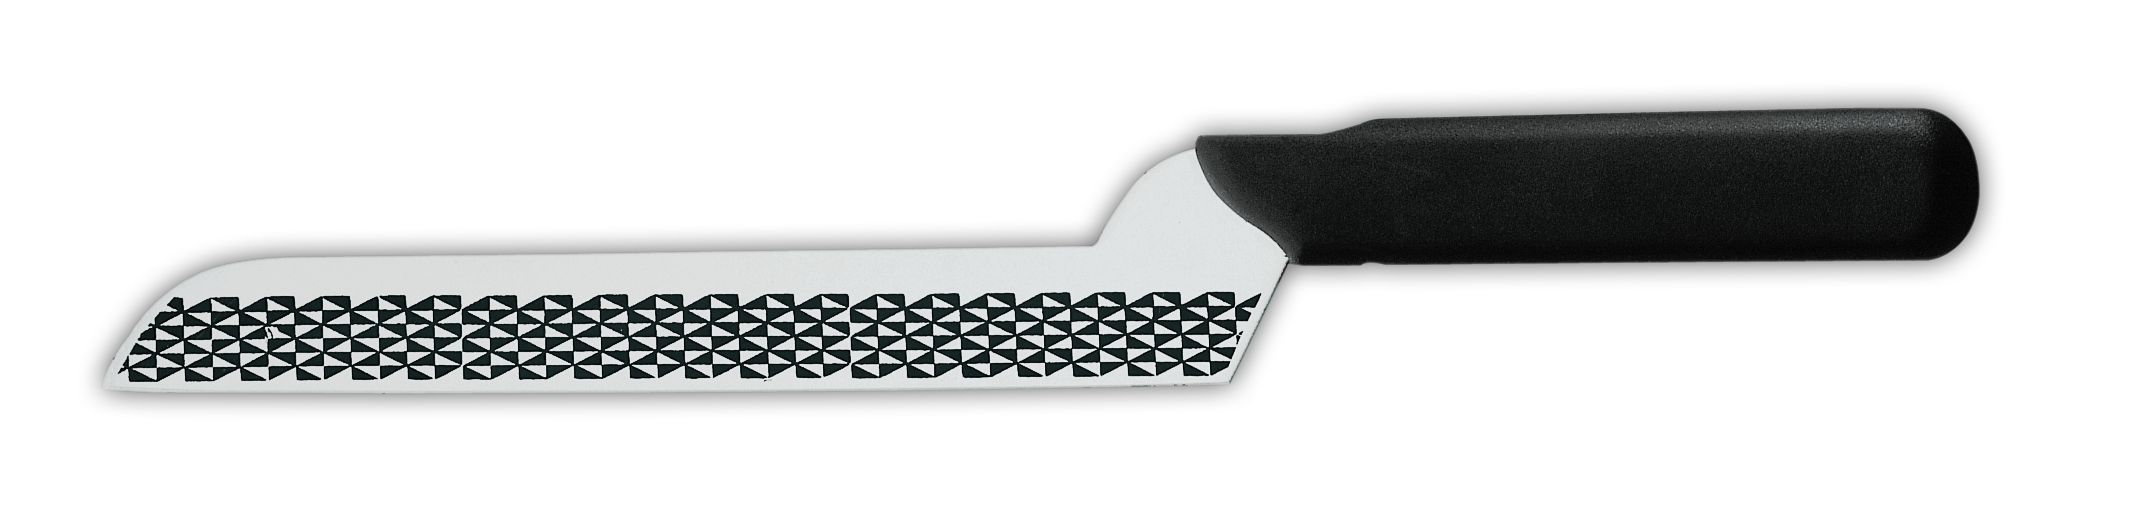 Нож для сыра 9605g, лезвие с травлением, 12 см,  черная рукоятка